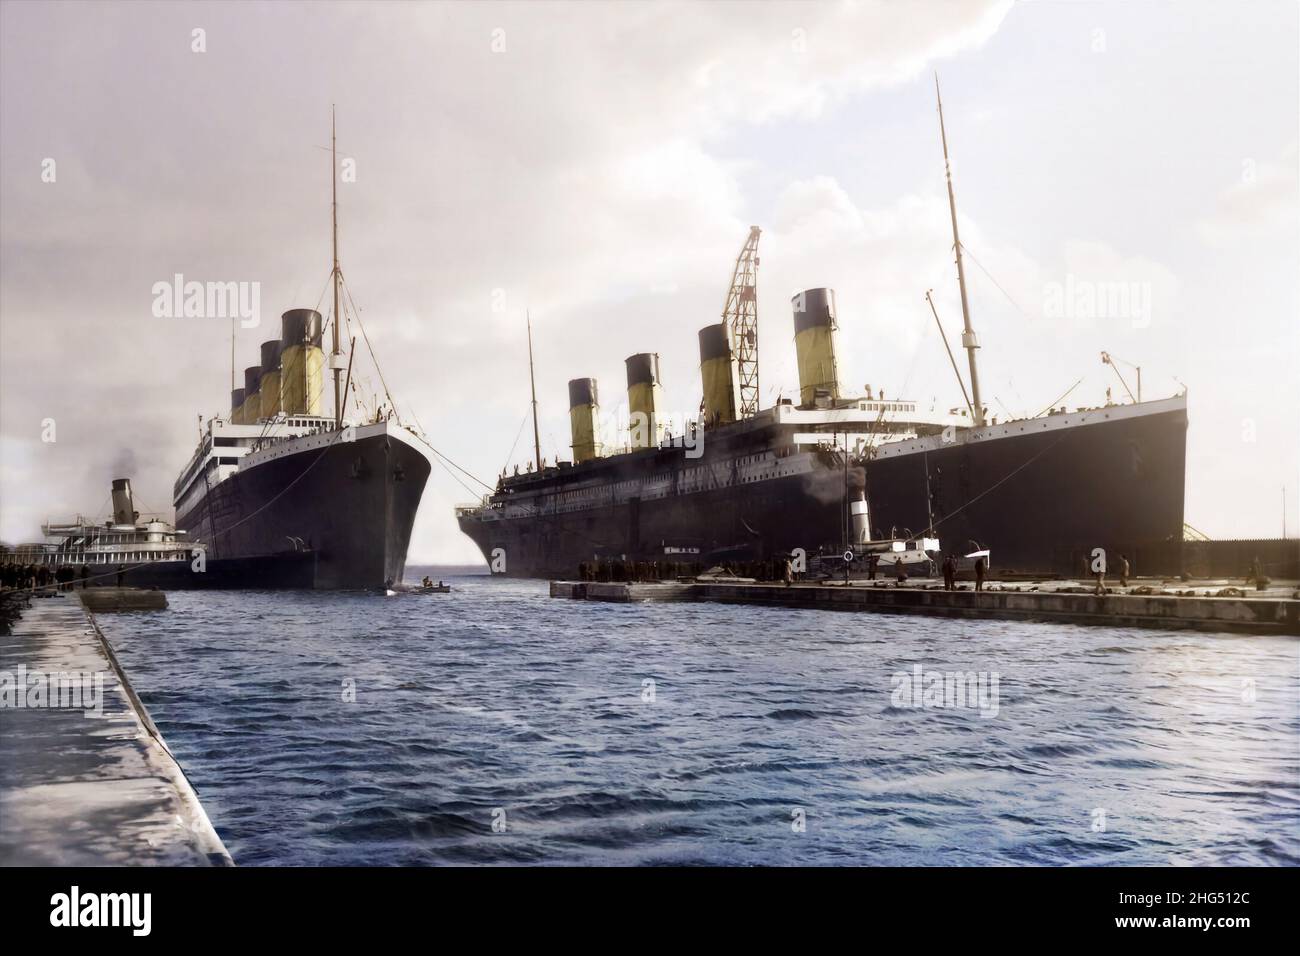 Das RMS Olympic verlässt das Trockendock und kehrt nach Reparaturen wieder in Betrieb. Das Schiff wurde zum letzten Mal mit seinem Schwesterschiff Titanic fotografiert. Stockfoto